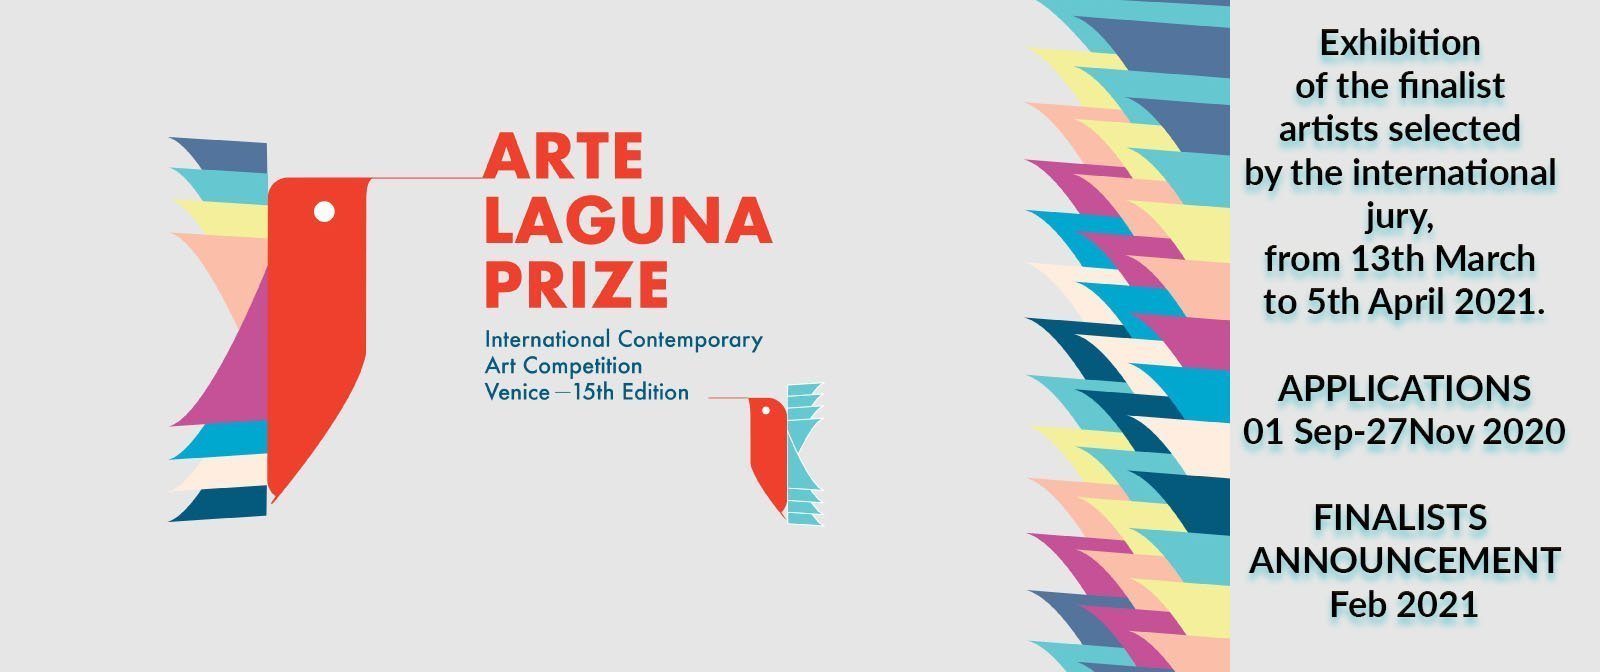 Участие в международной премии Arte Laguna Prize, которая проходит уже 15й год при поддержке сильнейших мировых арт-институций.